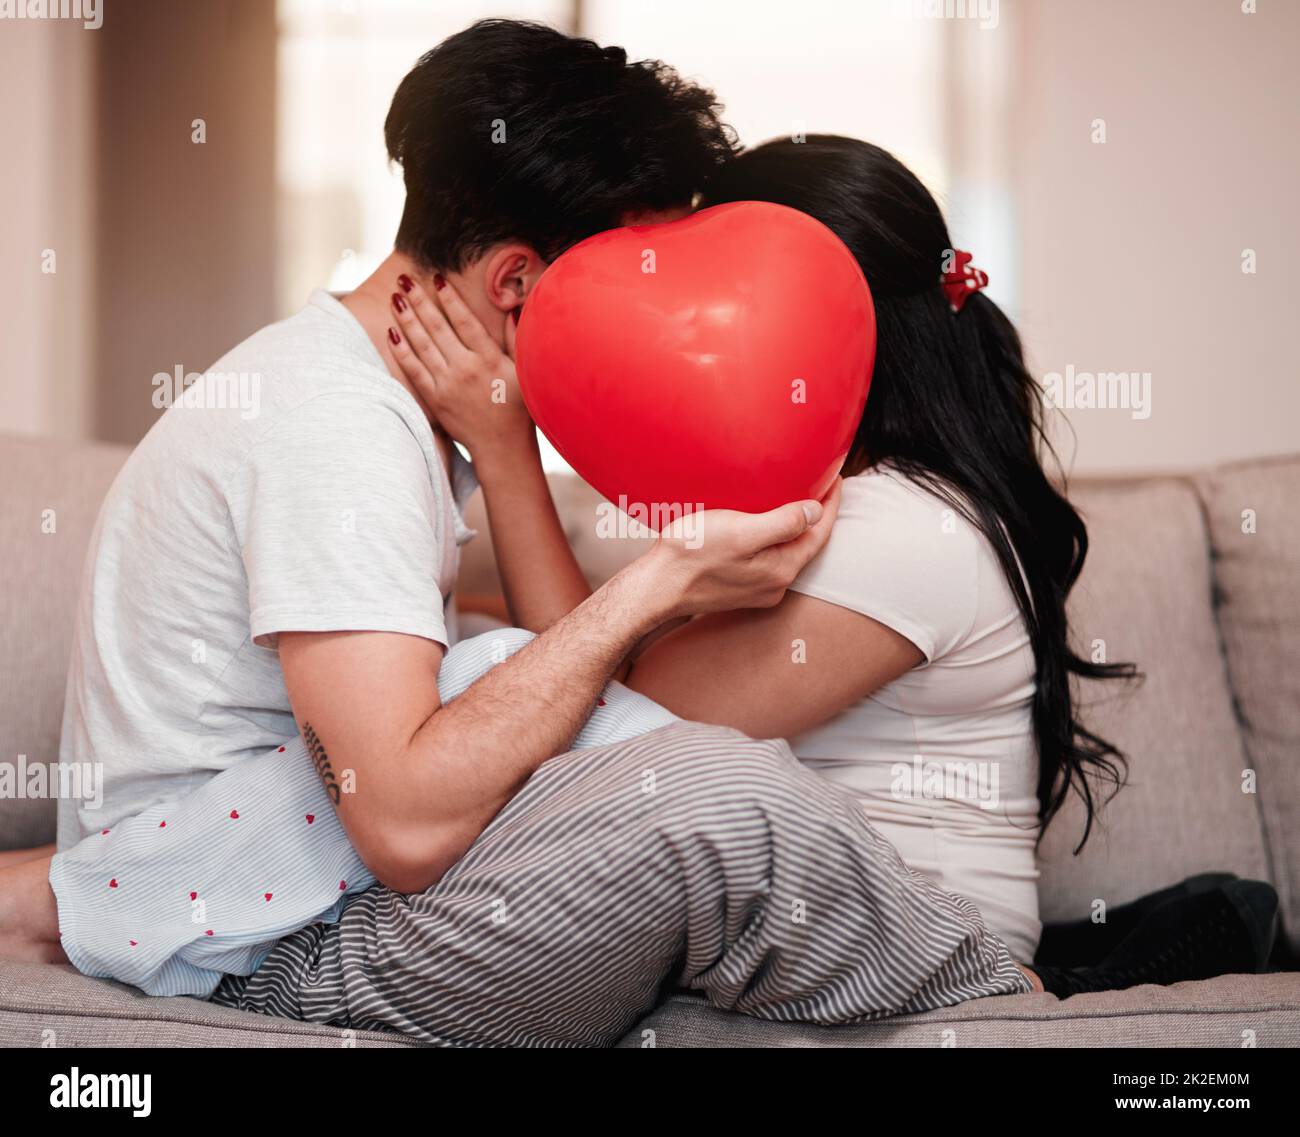 L'amour est la raison. Photo courte d'un jeune couple méconnaissable embrassant derrière un ballon en forme de cœur le jour de la Saint-Valentin. Banque D'Images